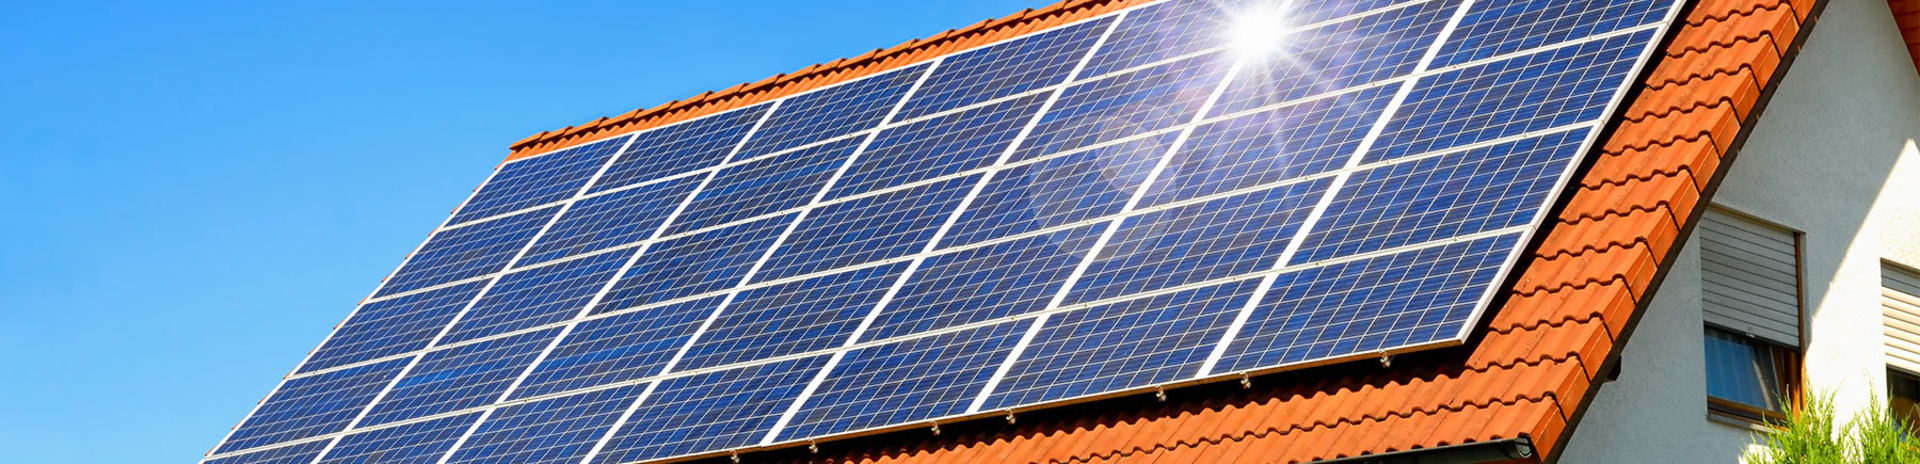 SG Solartechnik für kleine Anlagen im privaten Bereich